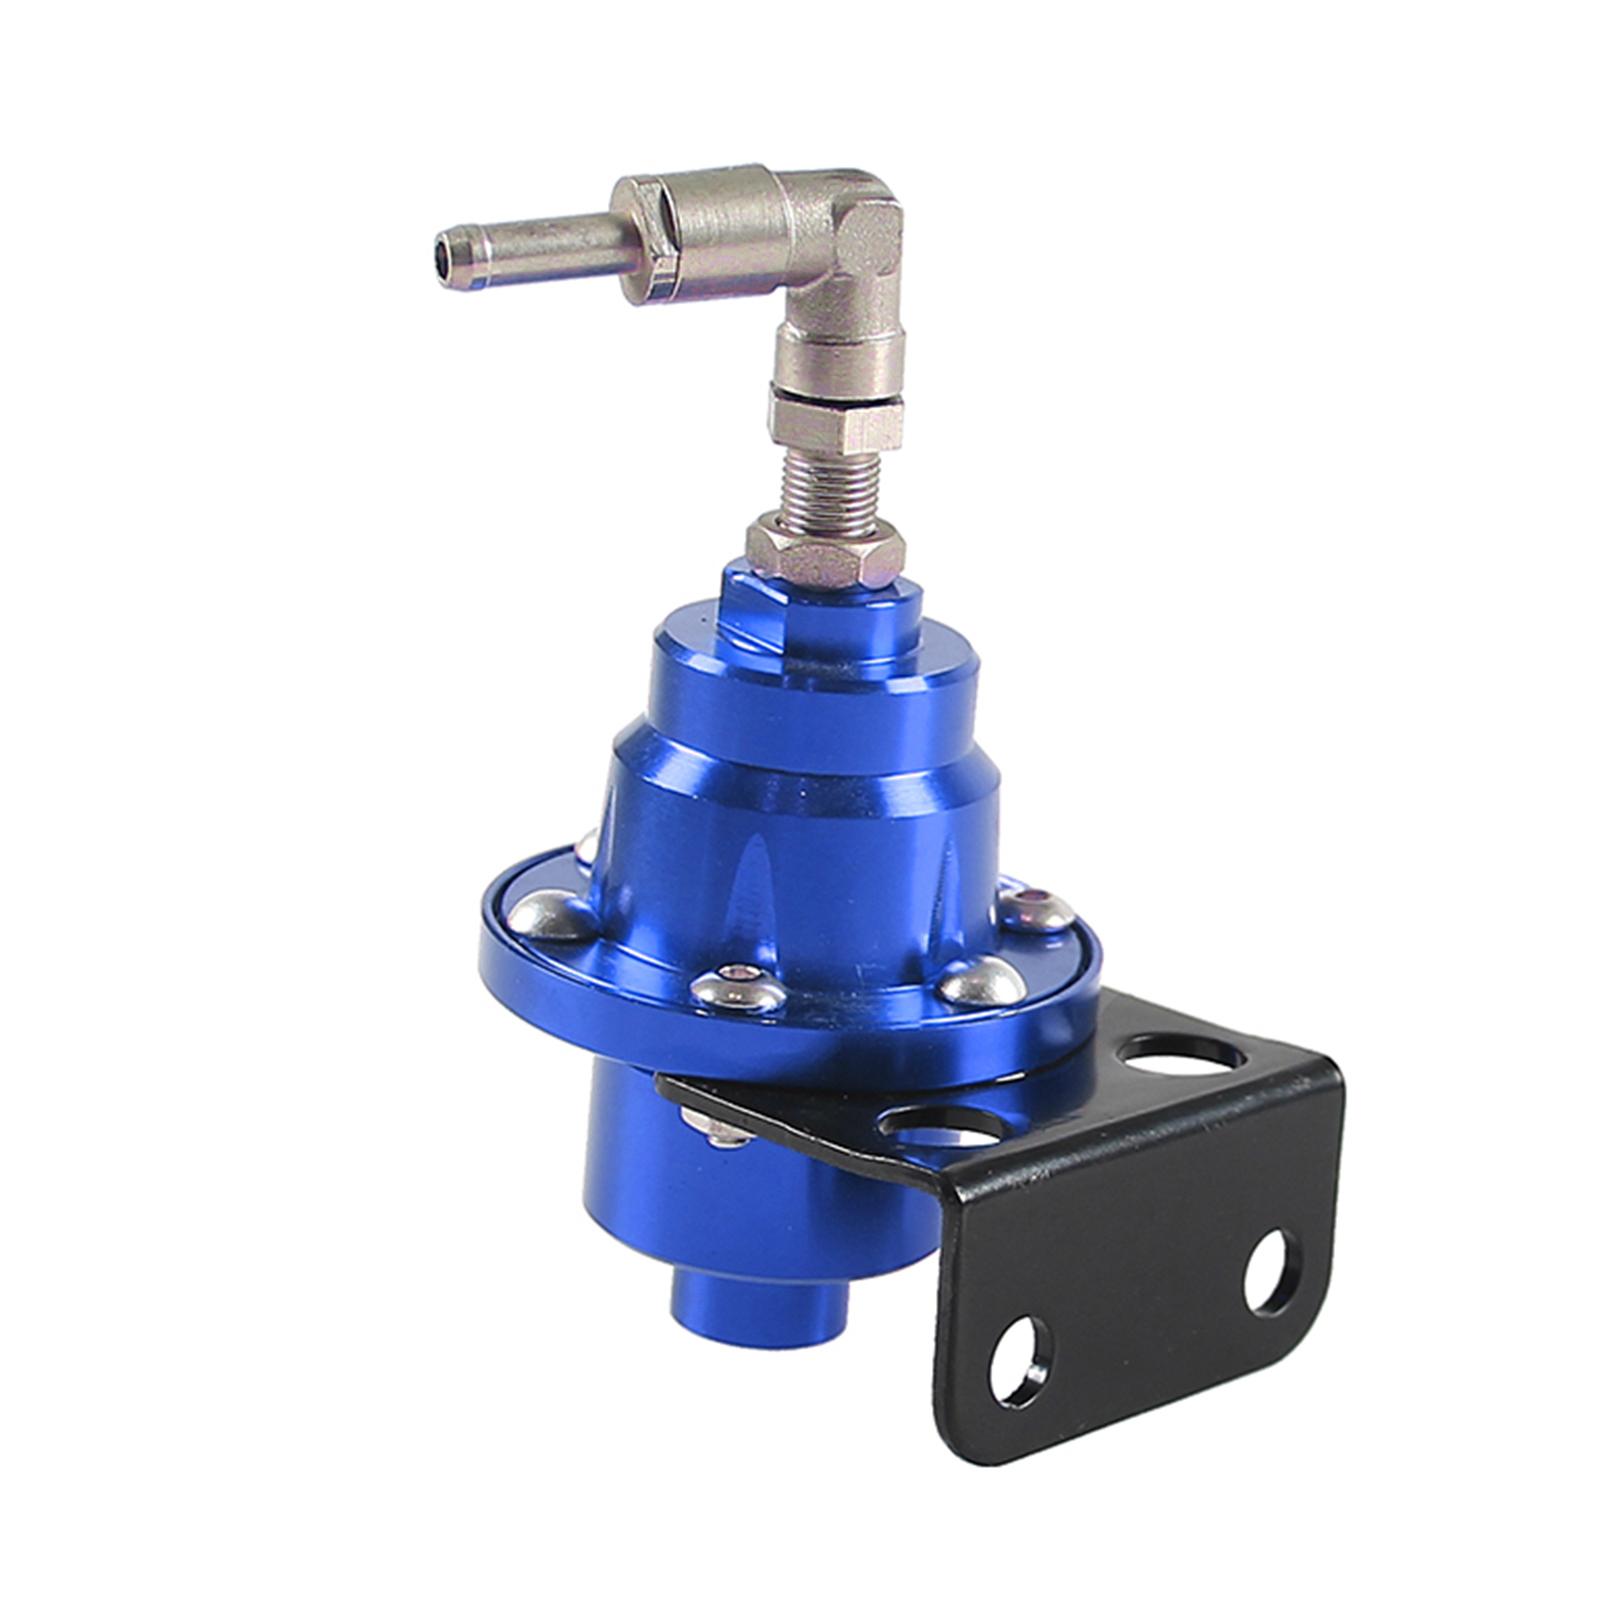 Adjustable Fuel Pressure Regulator with Gauge High Performance Blue